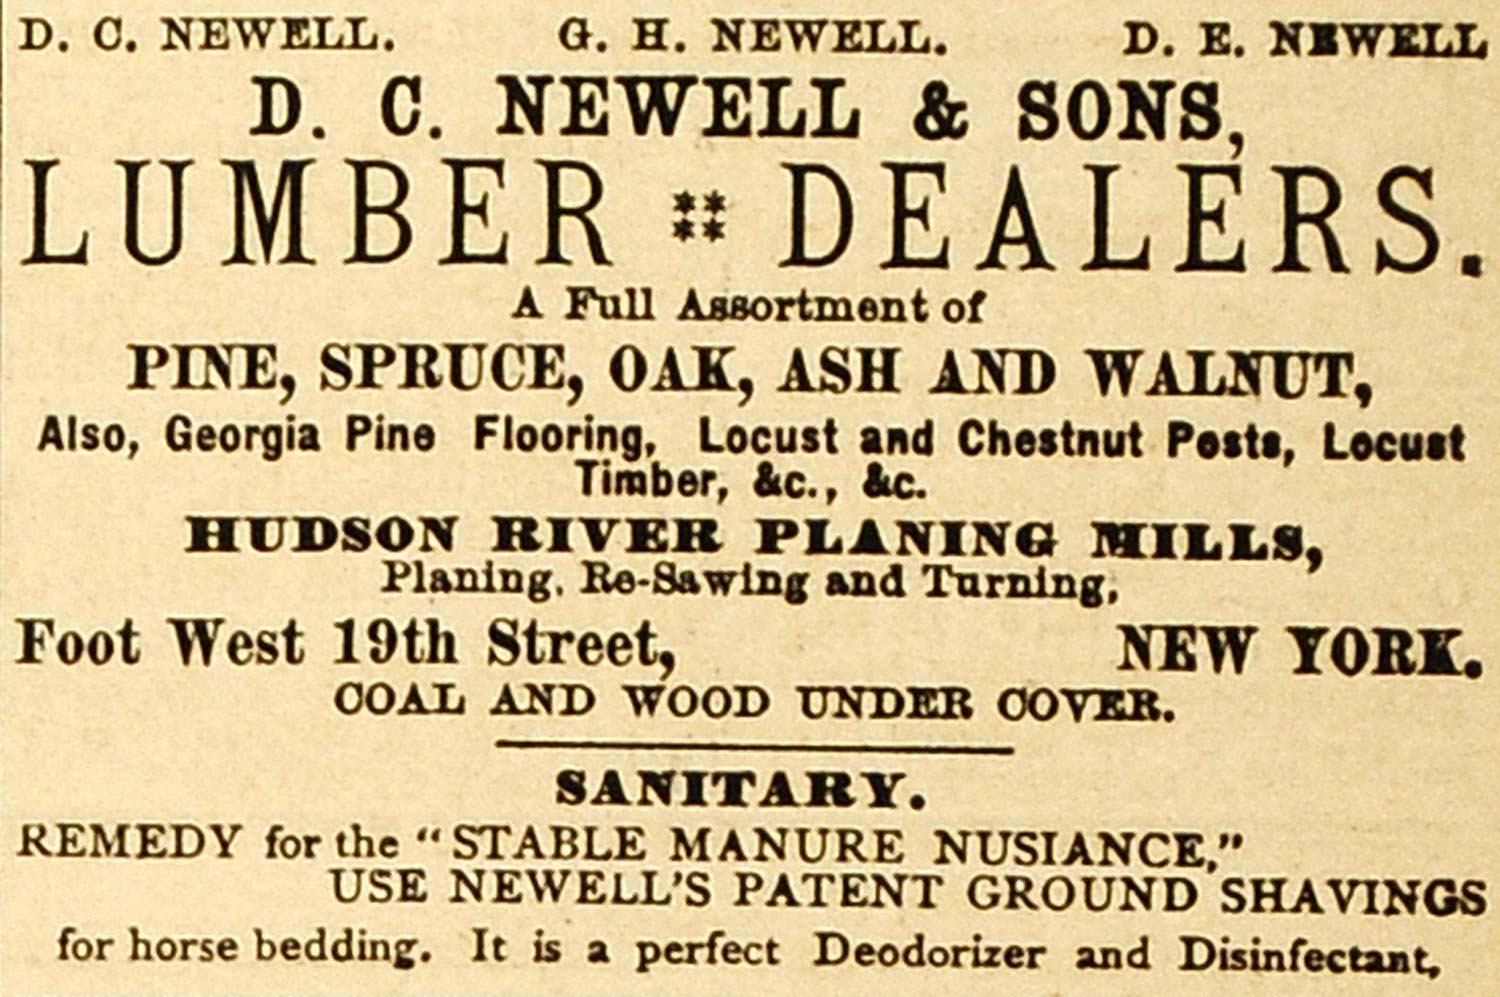 1883 Ad Newell Lumber Dealer Spruce Pine Shavings Farm - ORIGINAL GROC1